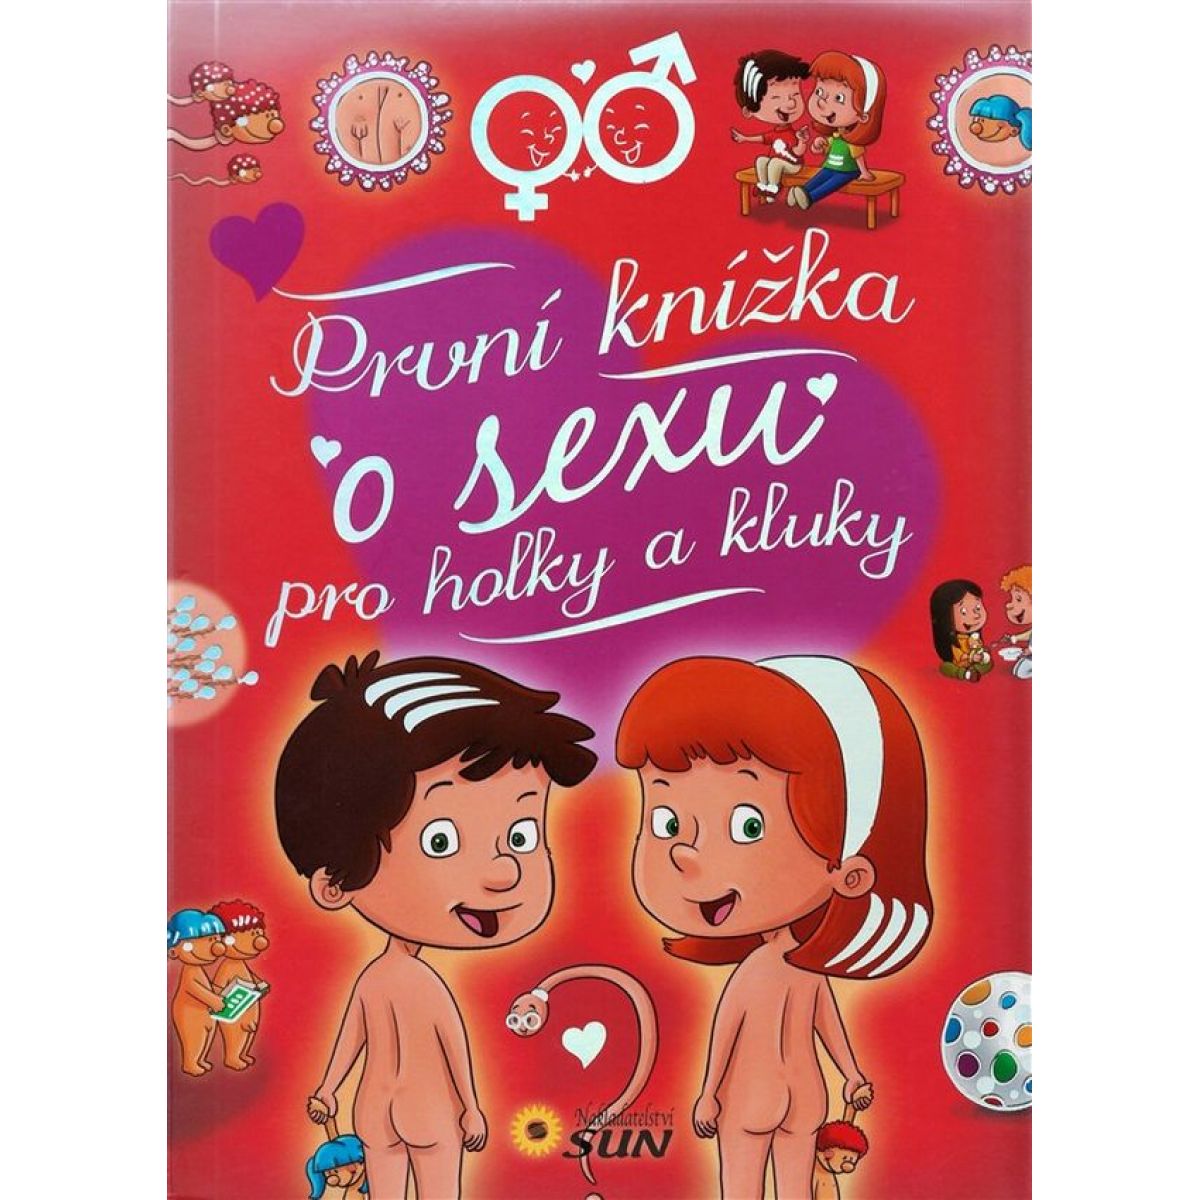 První knížka o sexu pro holky a kluky